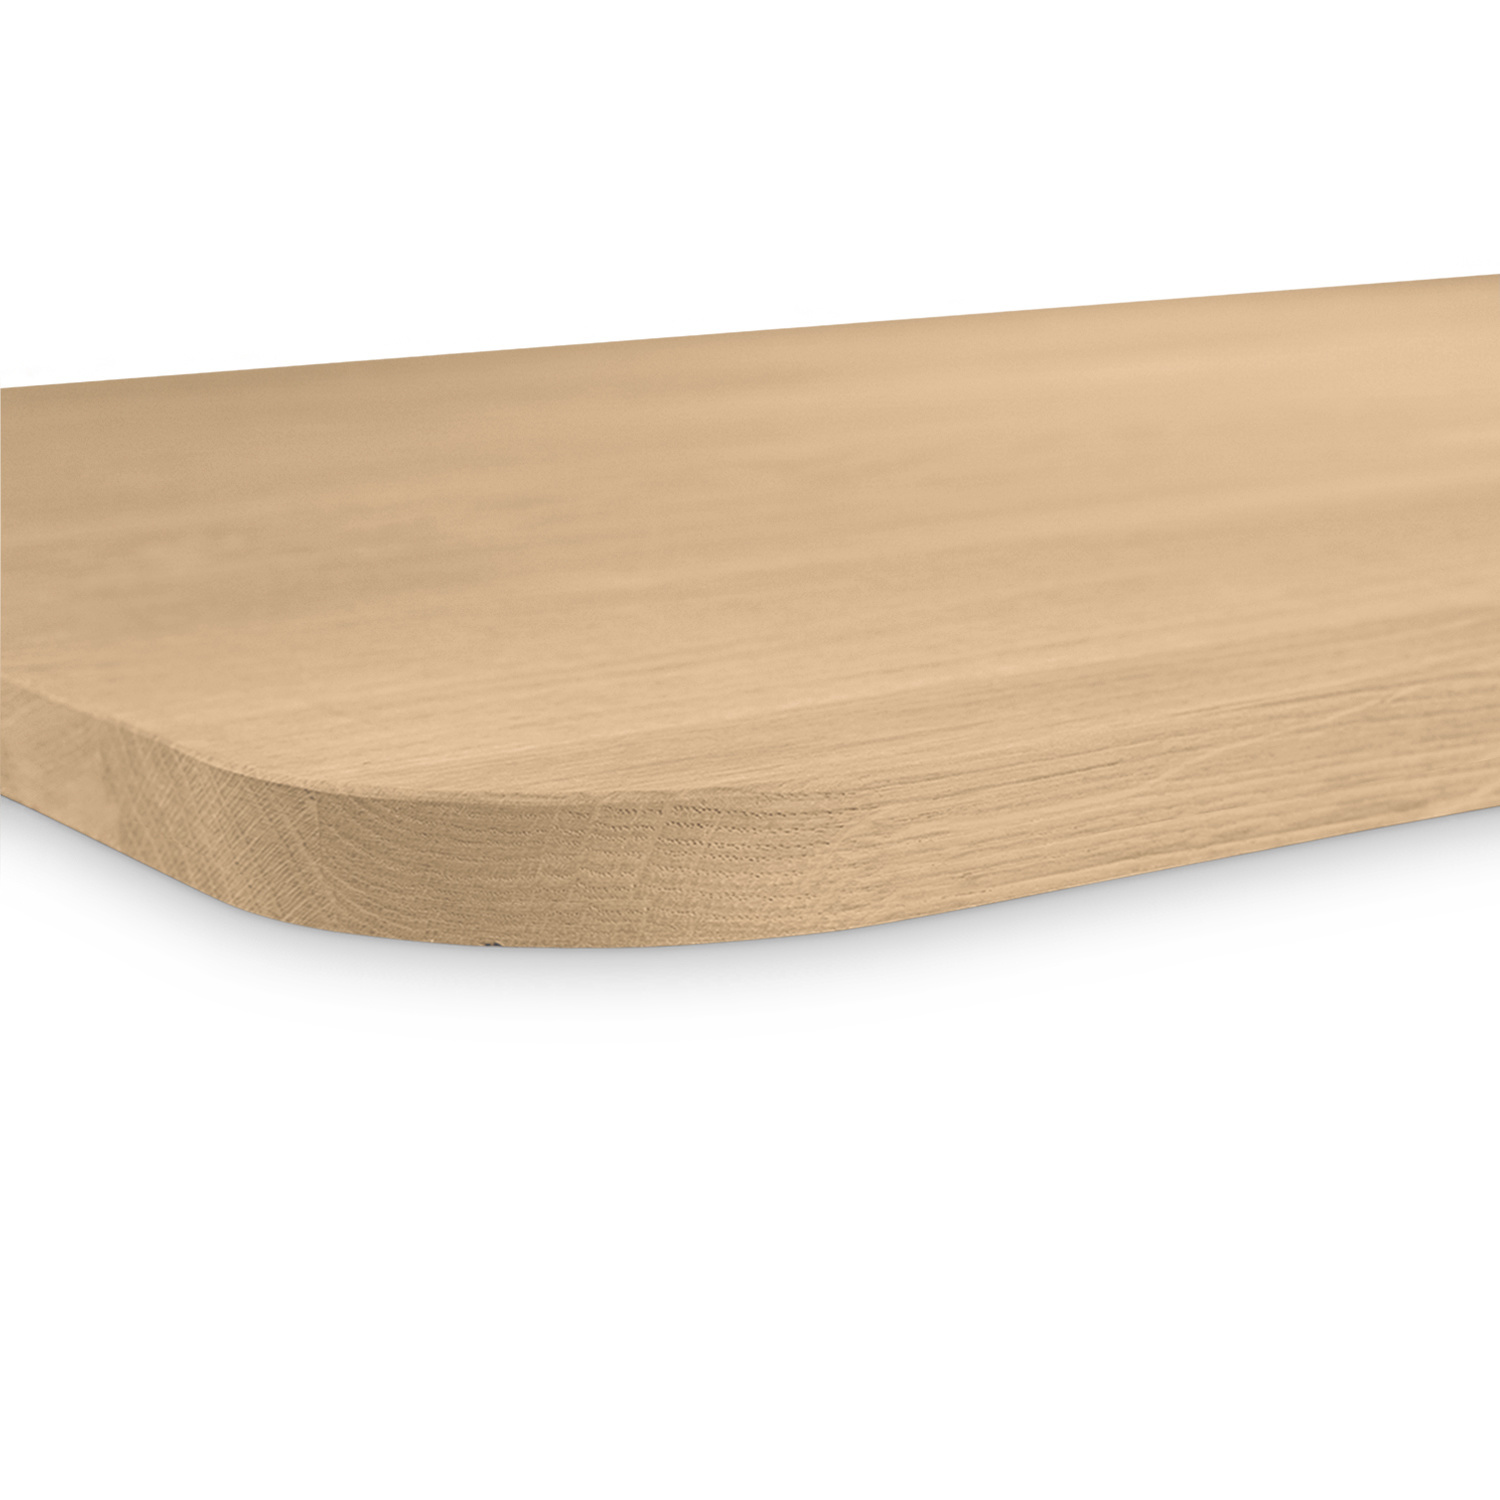  Eiken tafelblad met ronde hoeken op maat - 4 cm dik (1-laag) - foutvrij Europees eikenhout - met brede lamellen (circa 10-12 cm) - verlijmd kd 8-12% - 50-120x50-248 cm